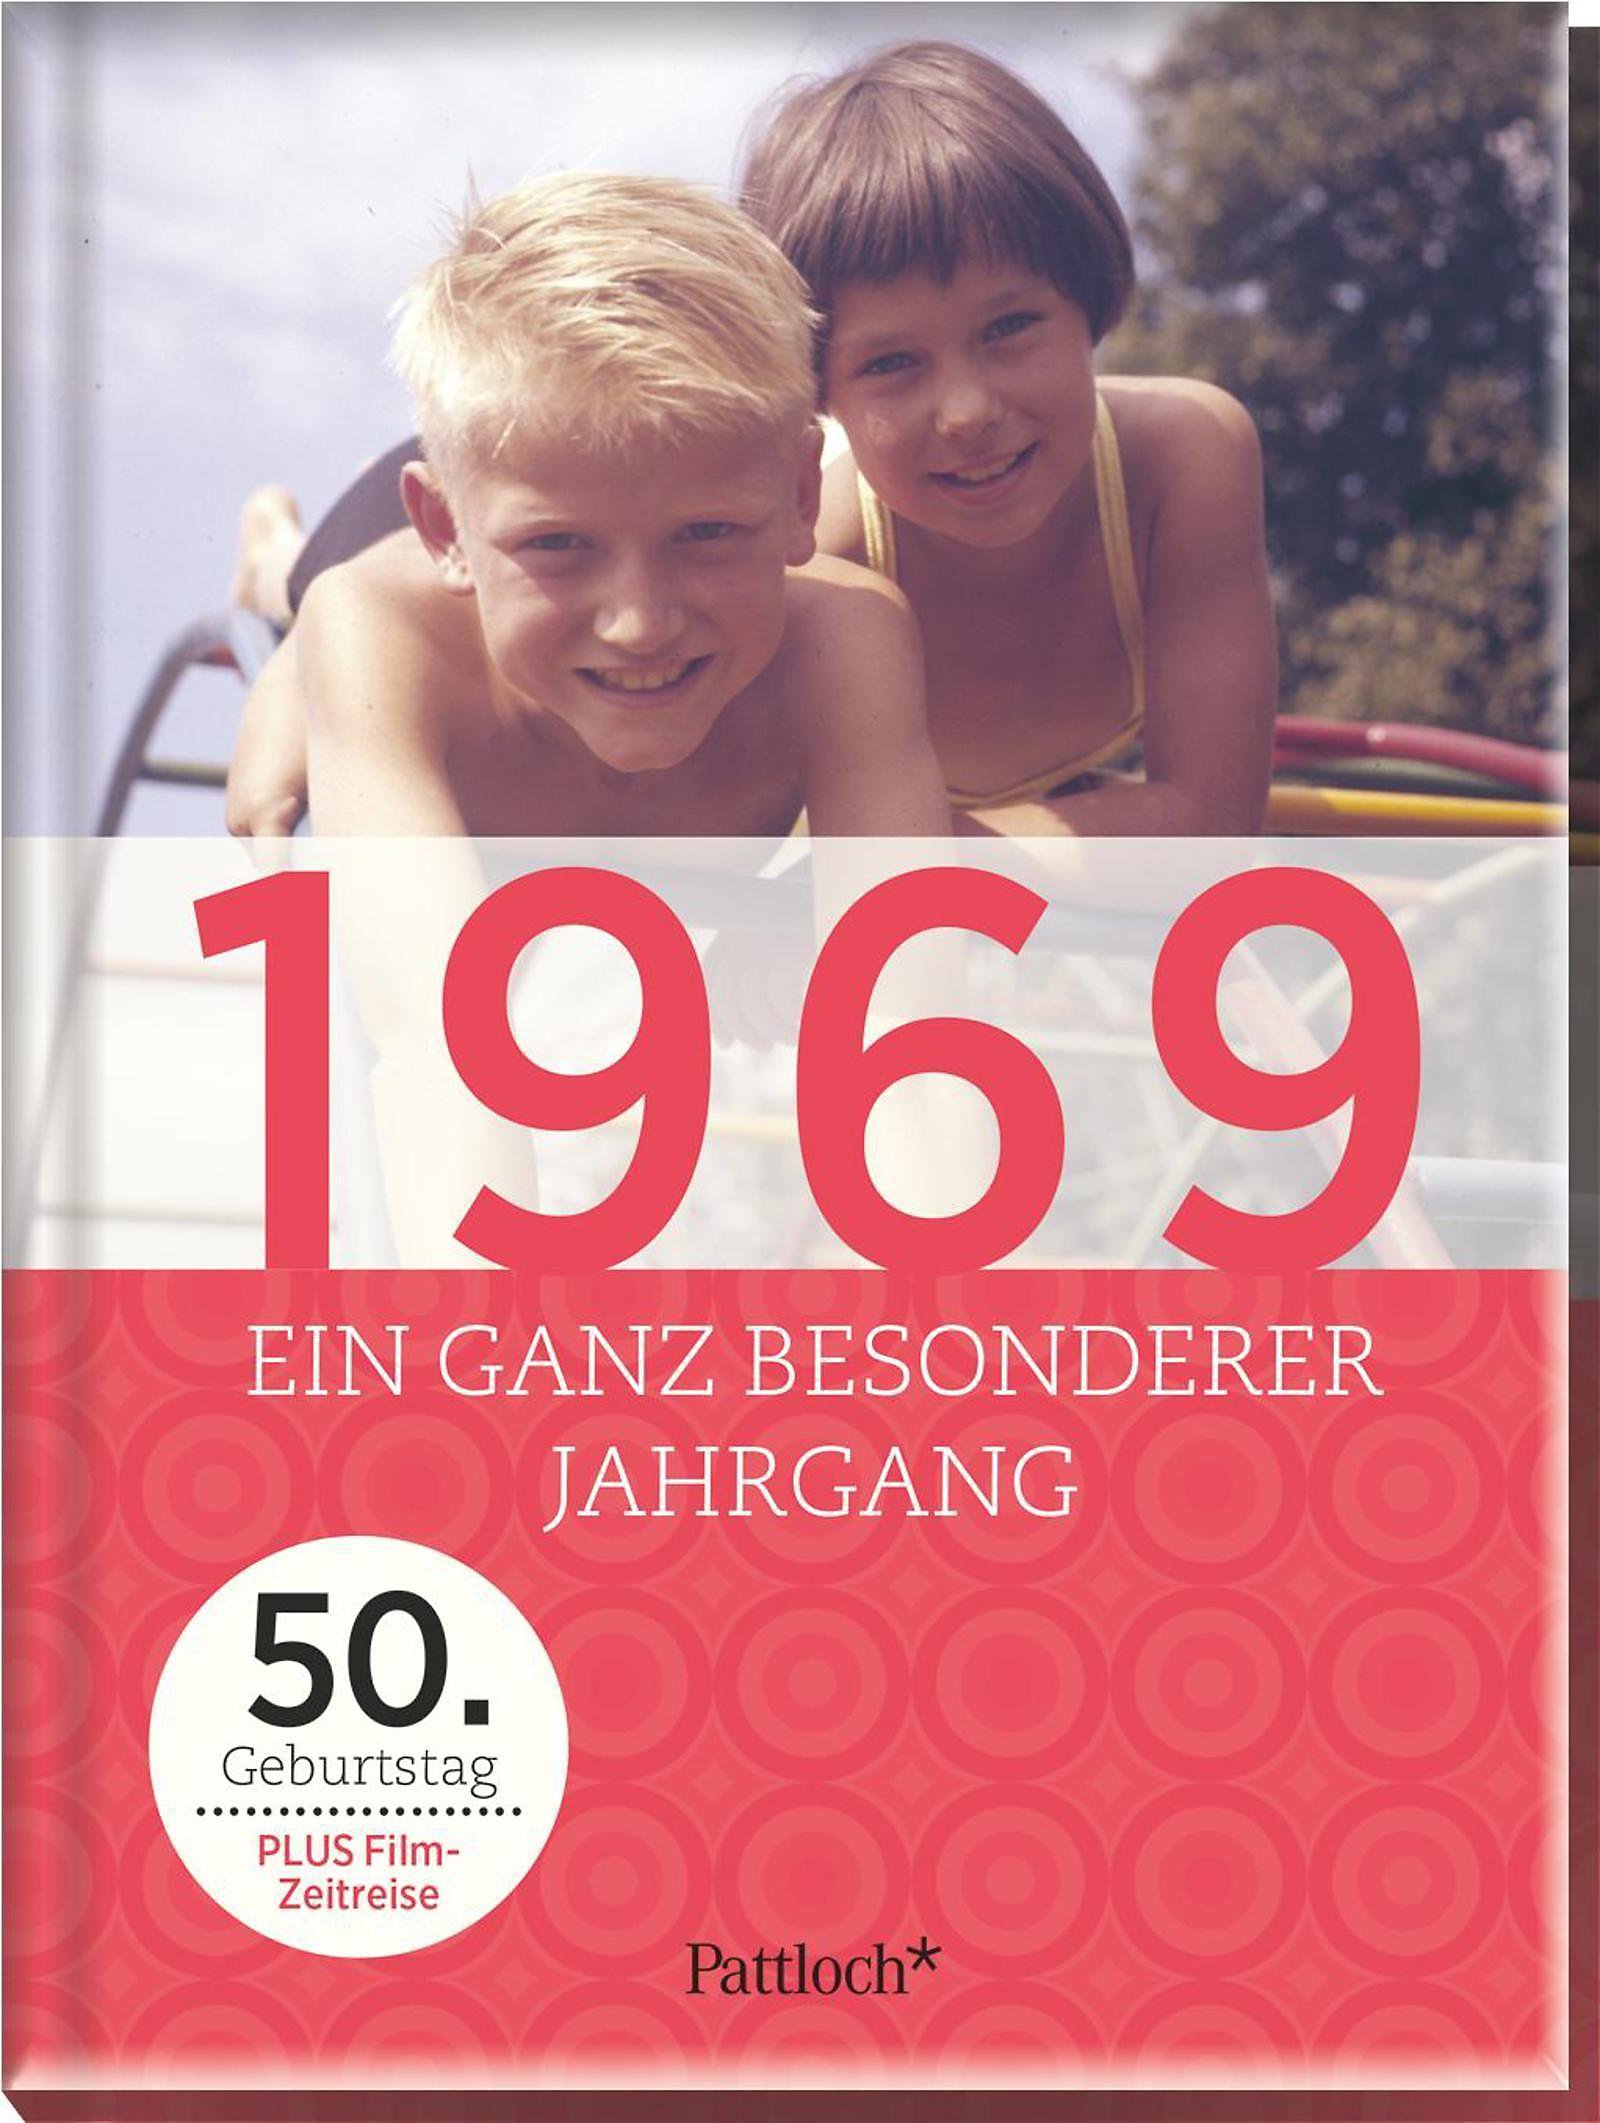 1969 Ein ganz besonderer Jahrgang 50 Geburtstag PDF Epub-Ebook